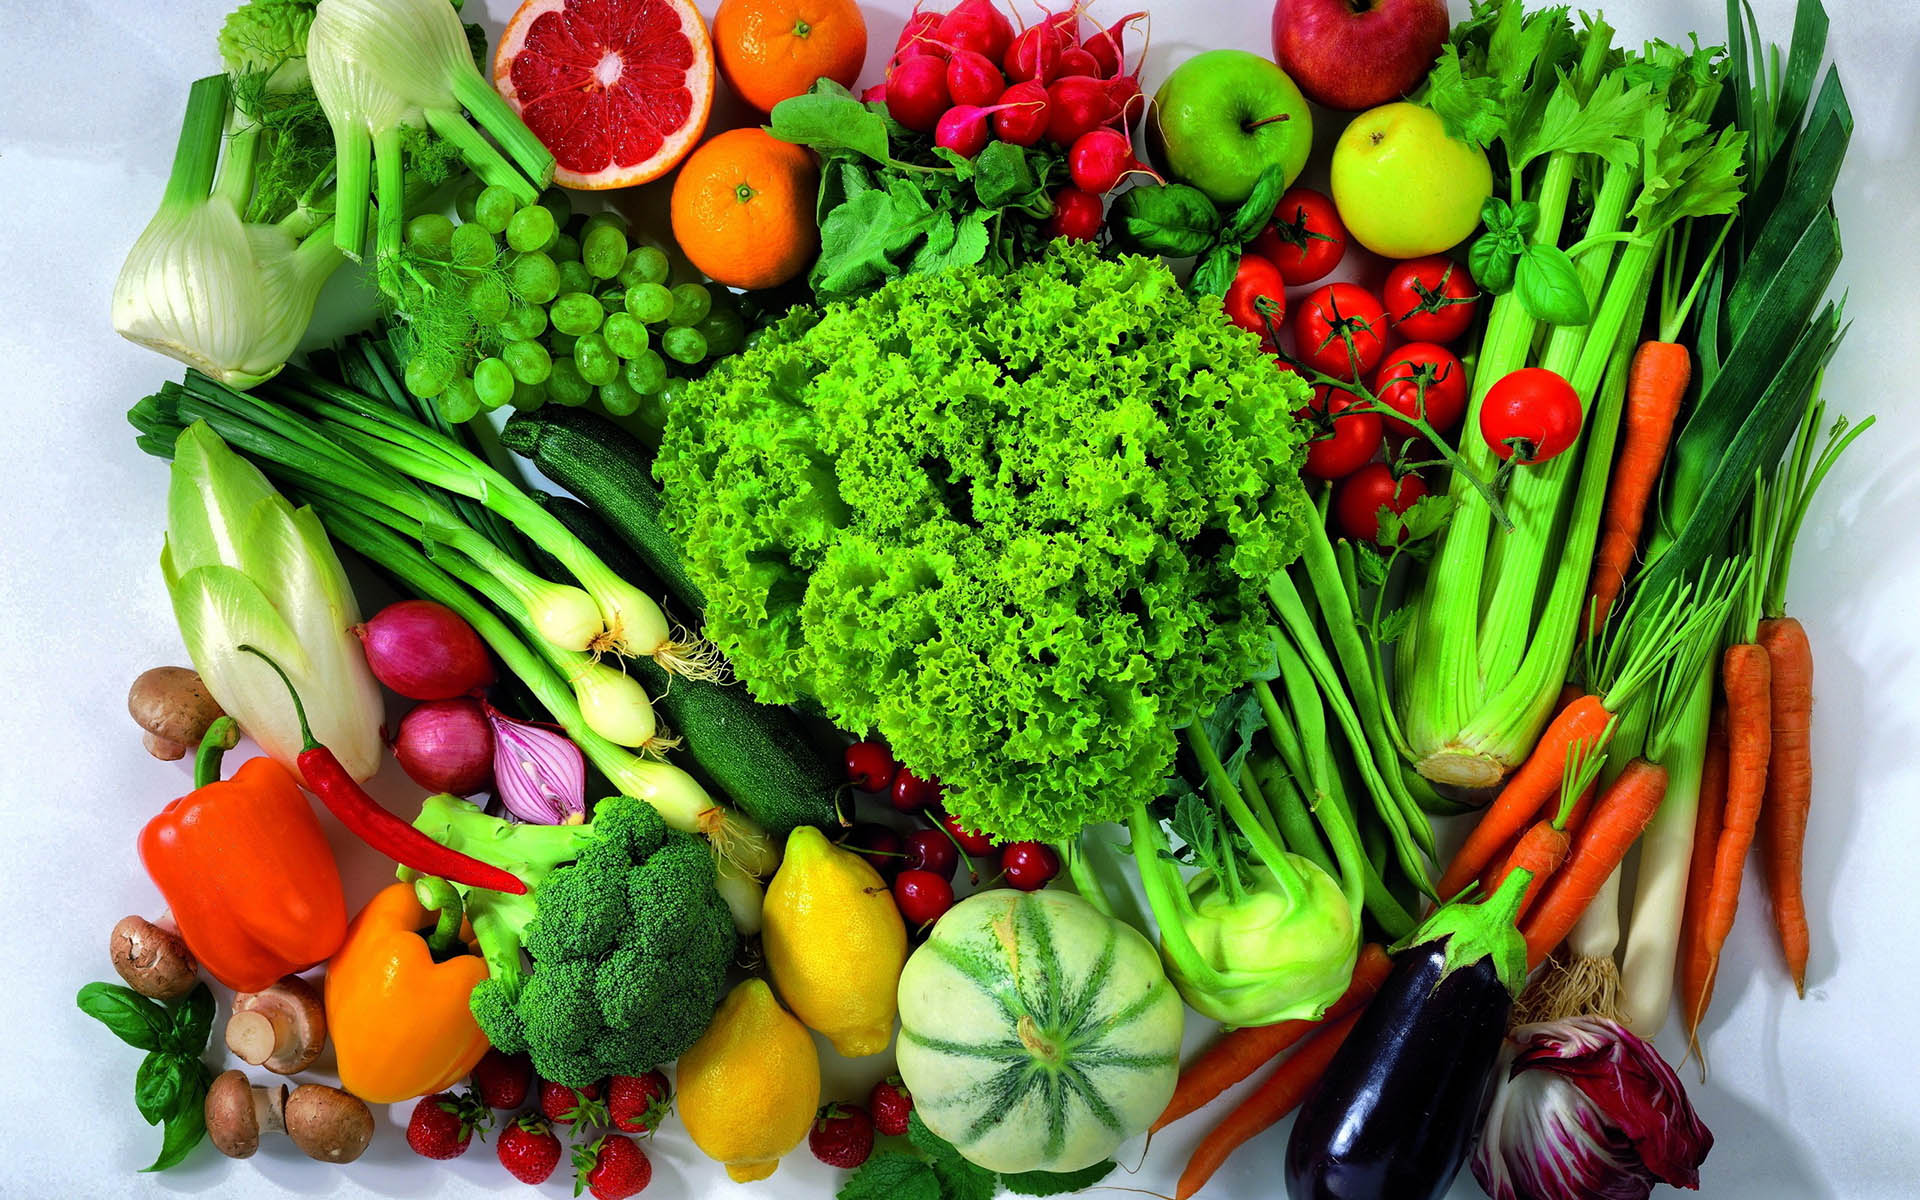  12تا از سالمترین سبزیجات روی زمین